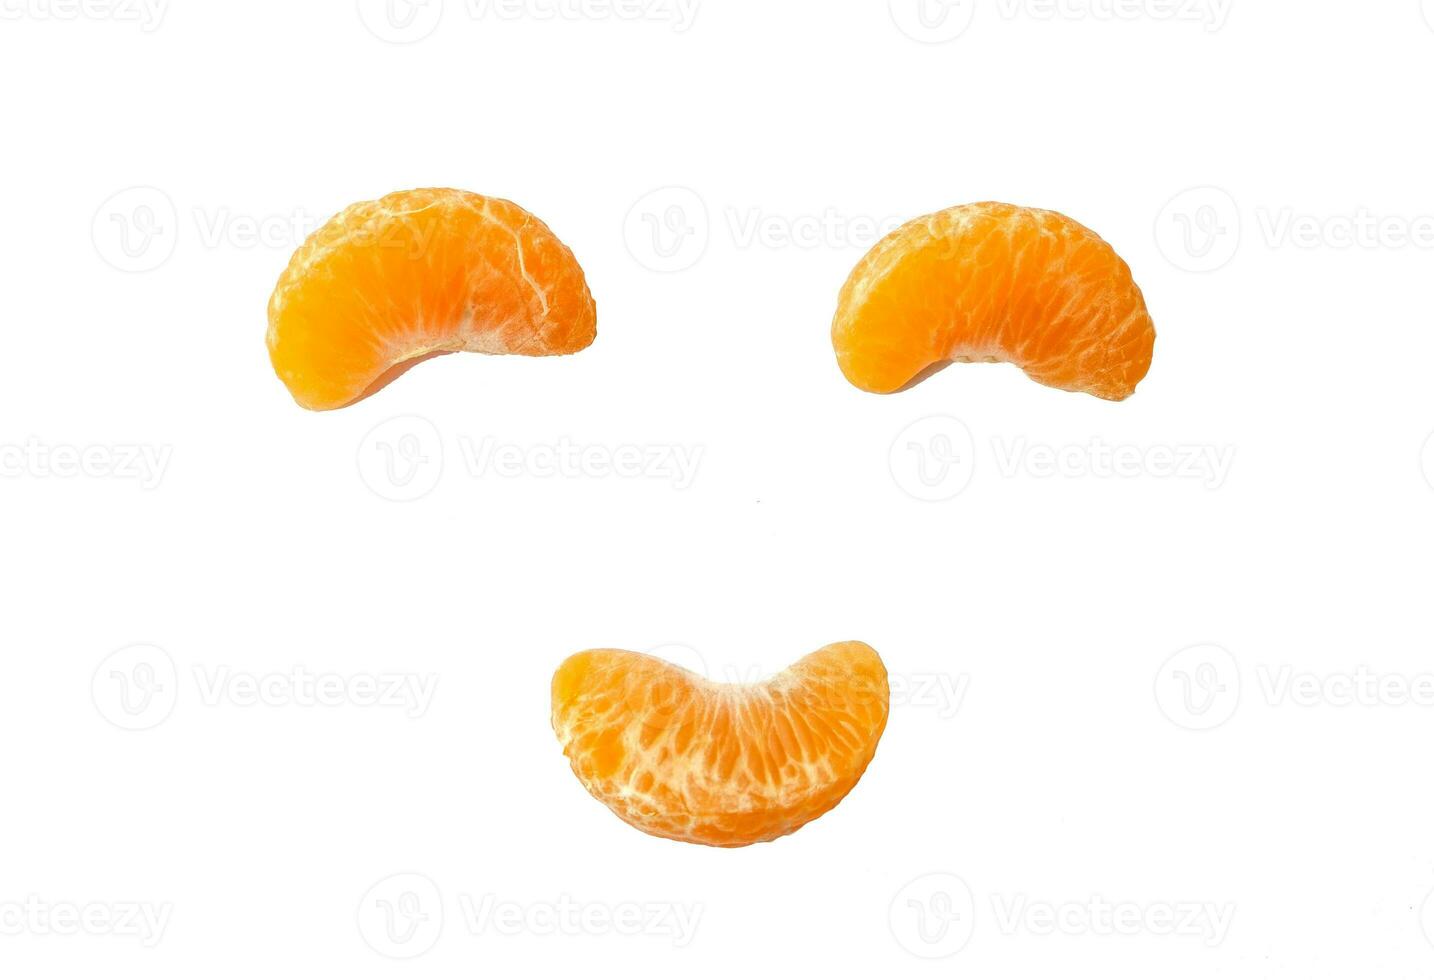 Orange Obst lächelnd 3 Stück auf Hintergrund foto